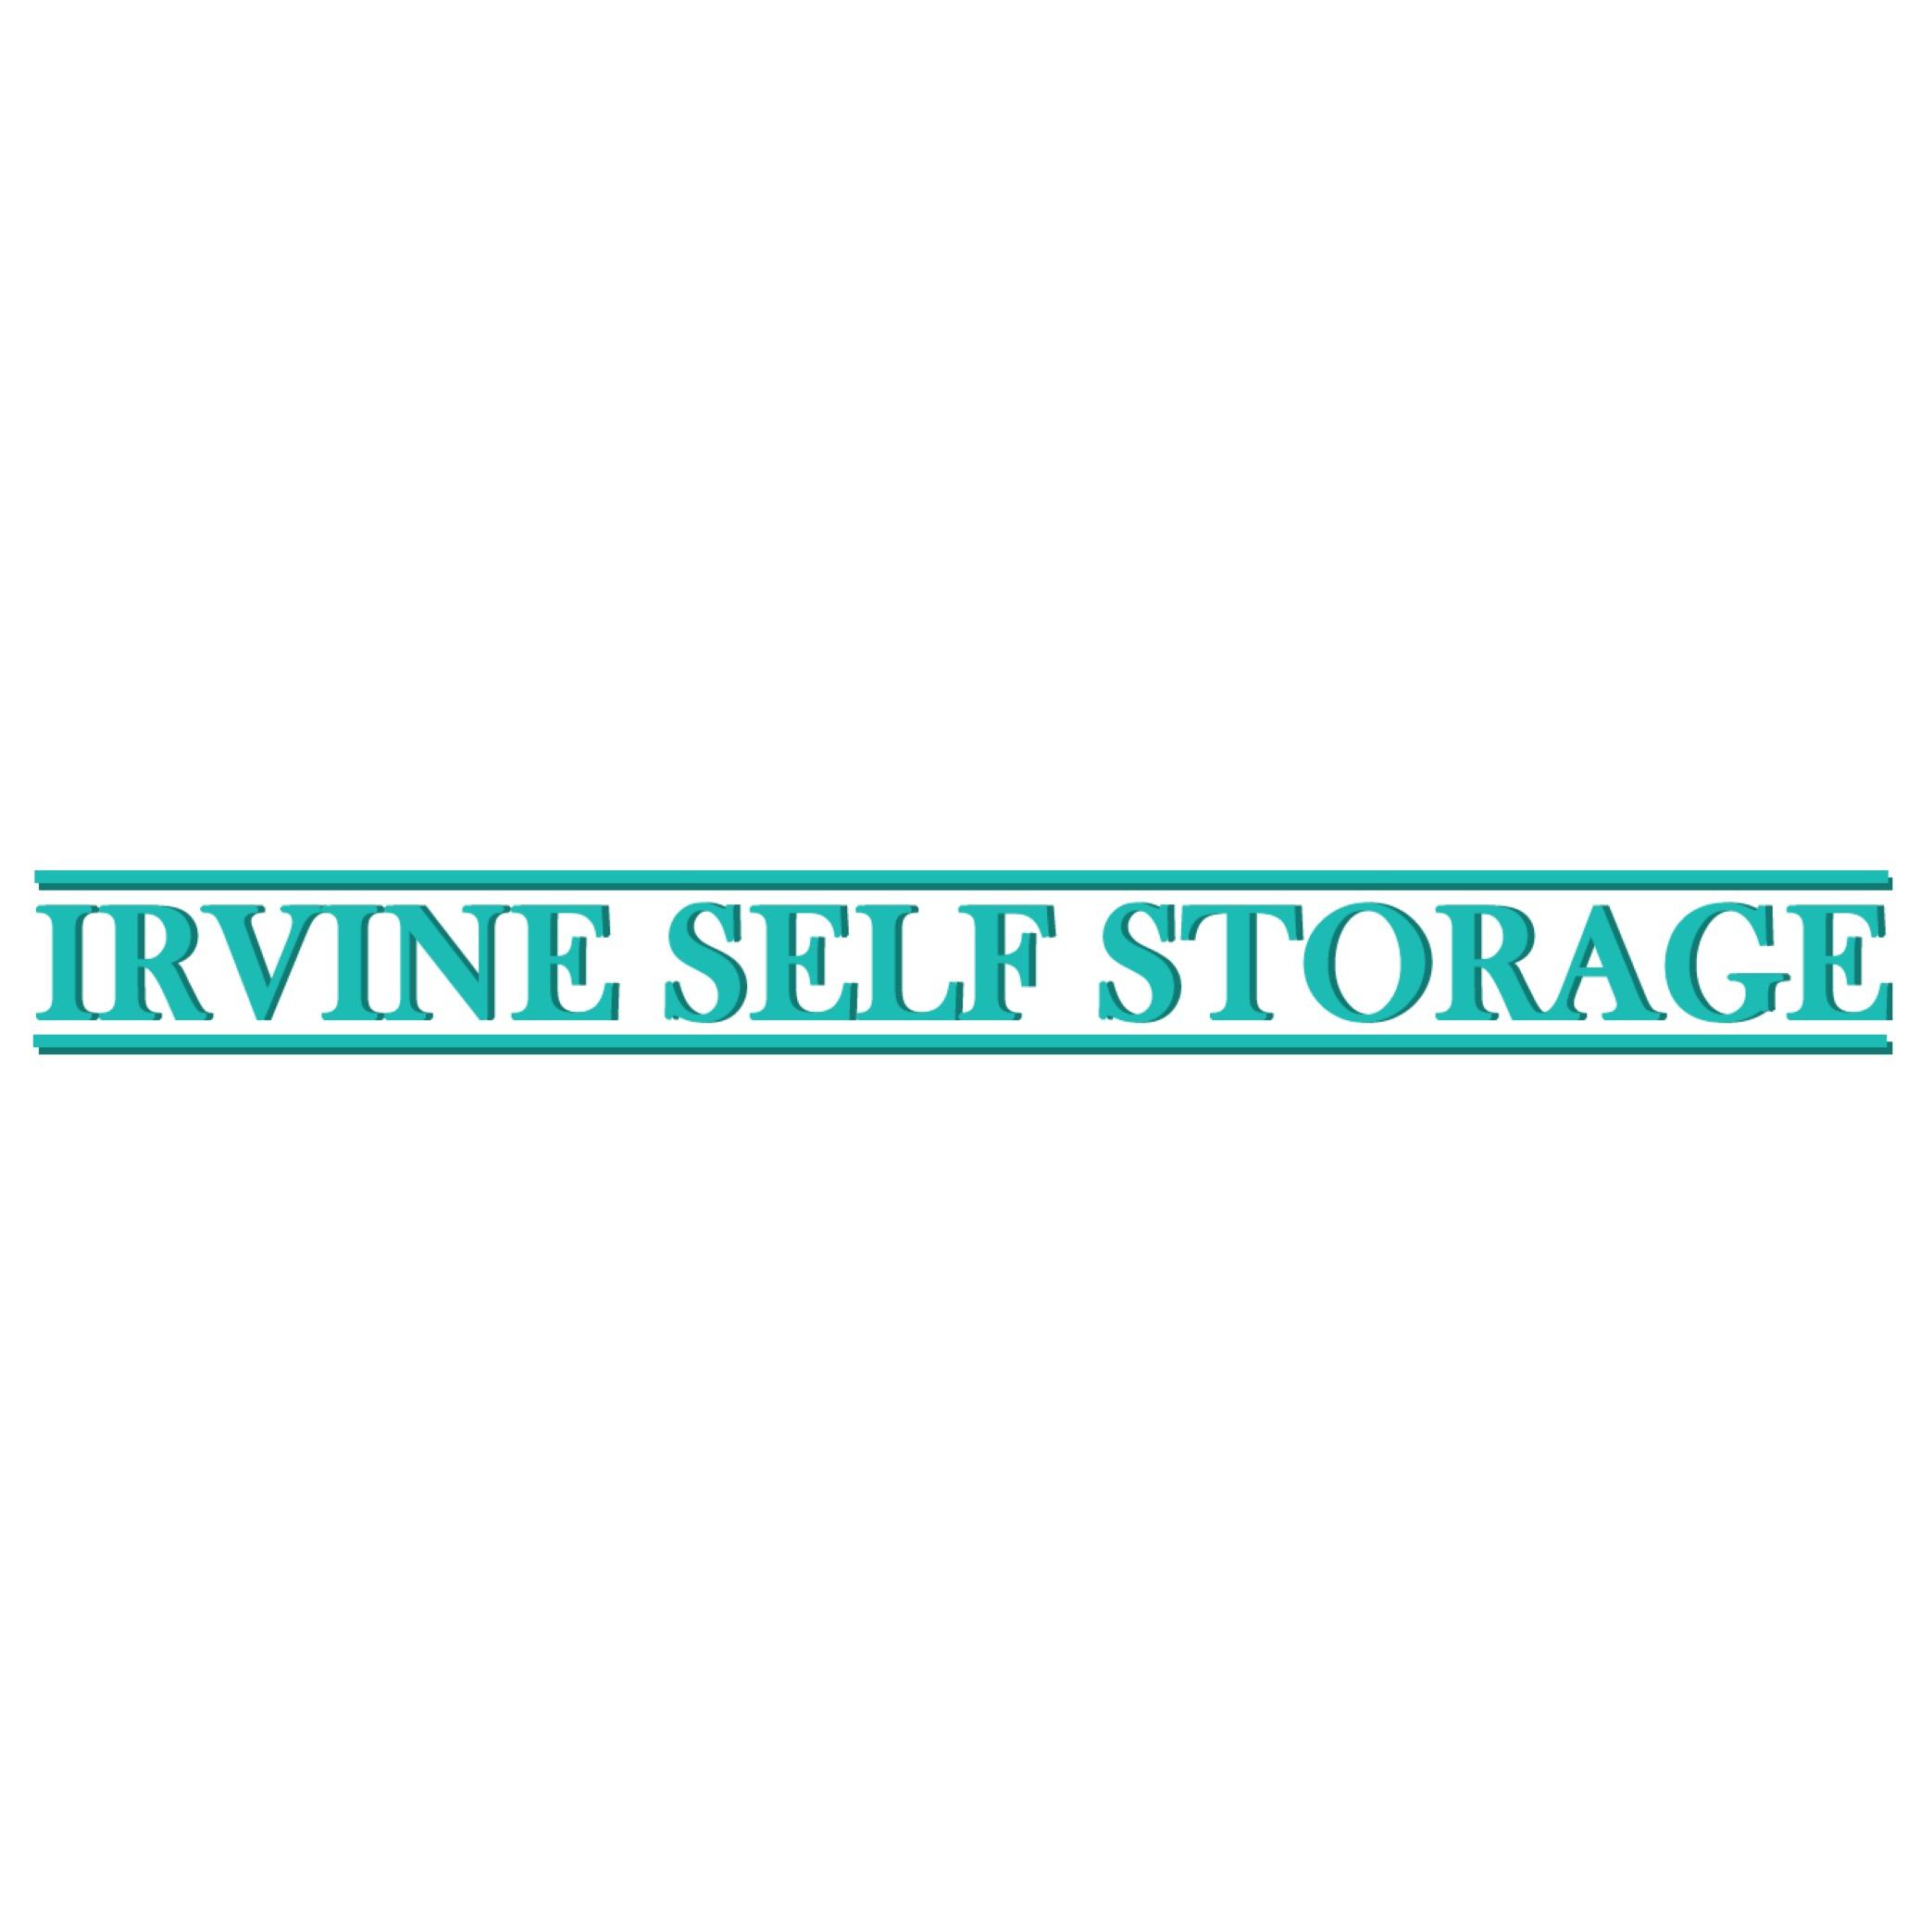 Irvine Self Storage